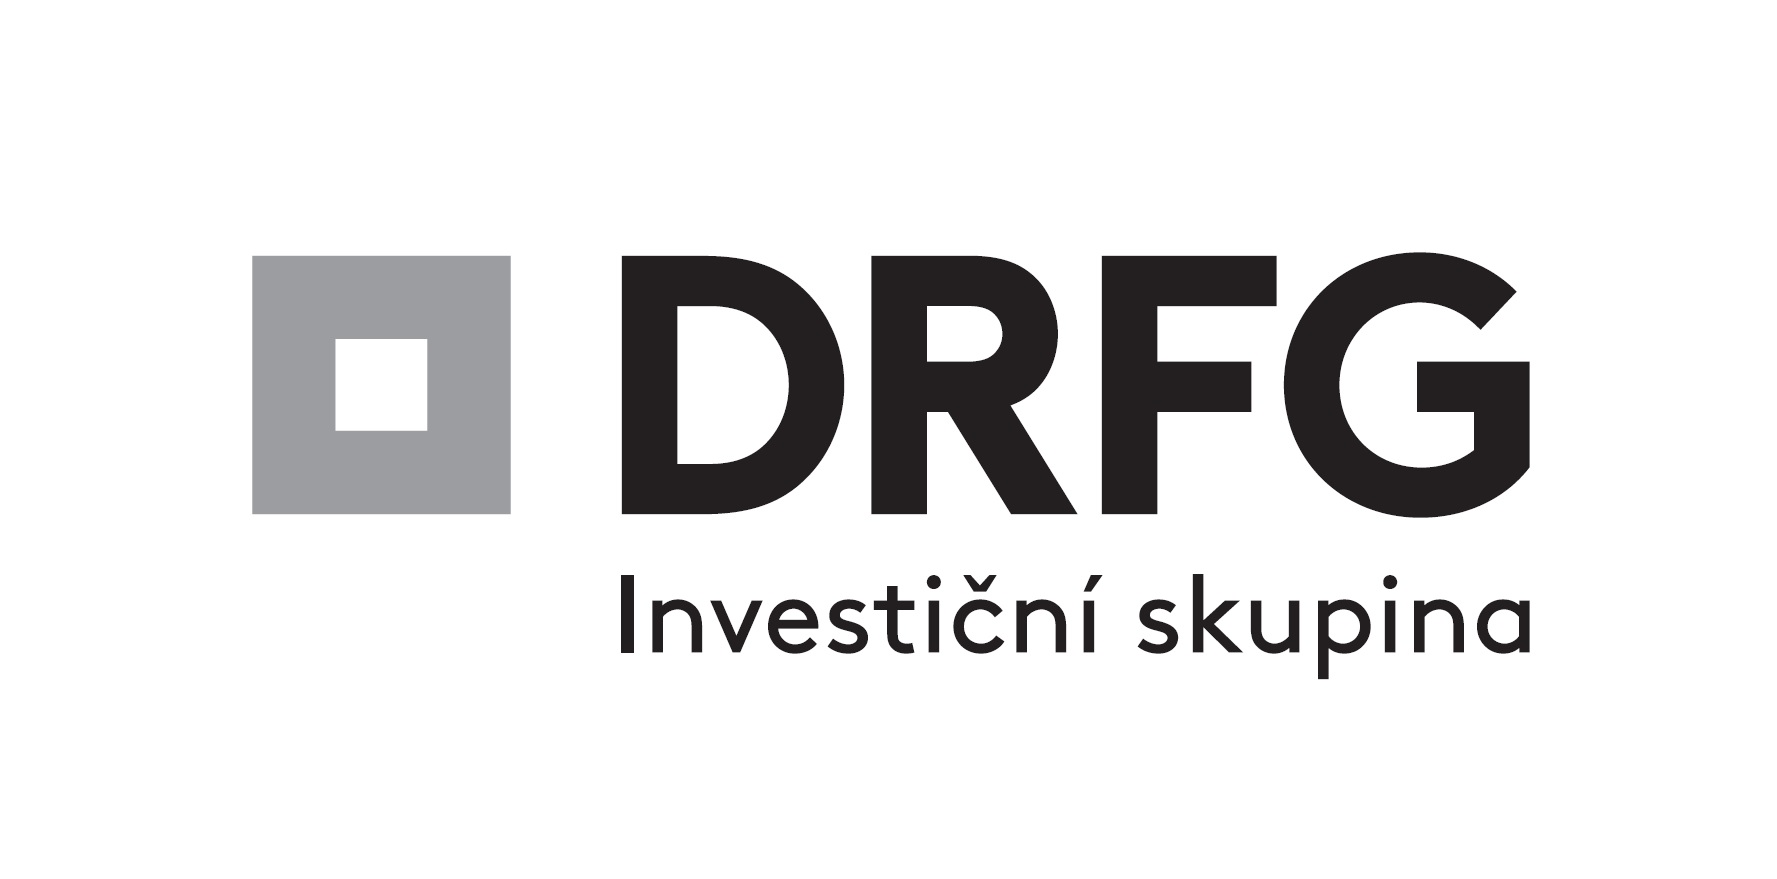 Investiční skupina DRFG hodlá vládnout rozvoji sítí 5G